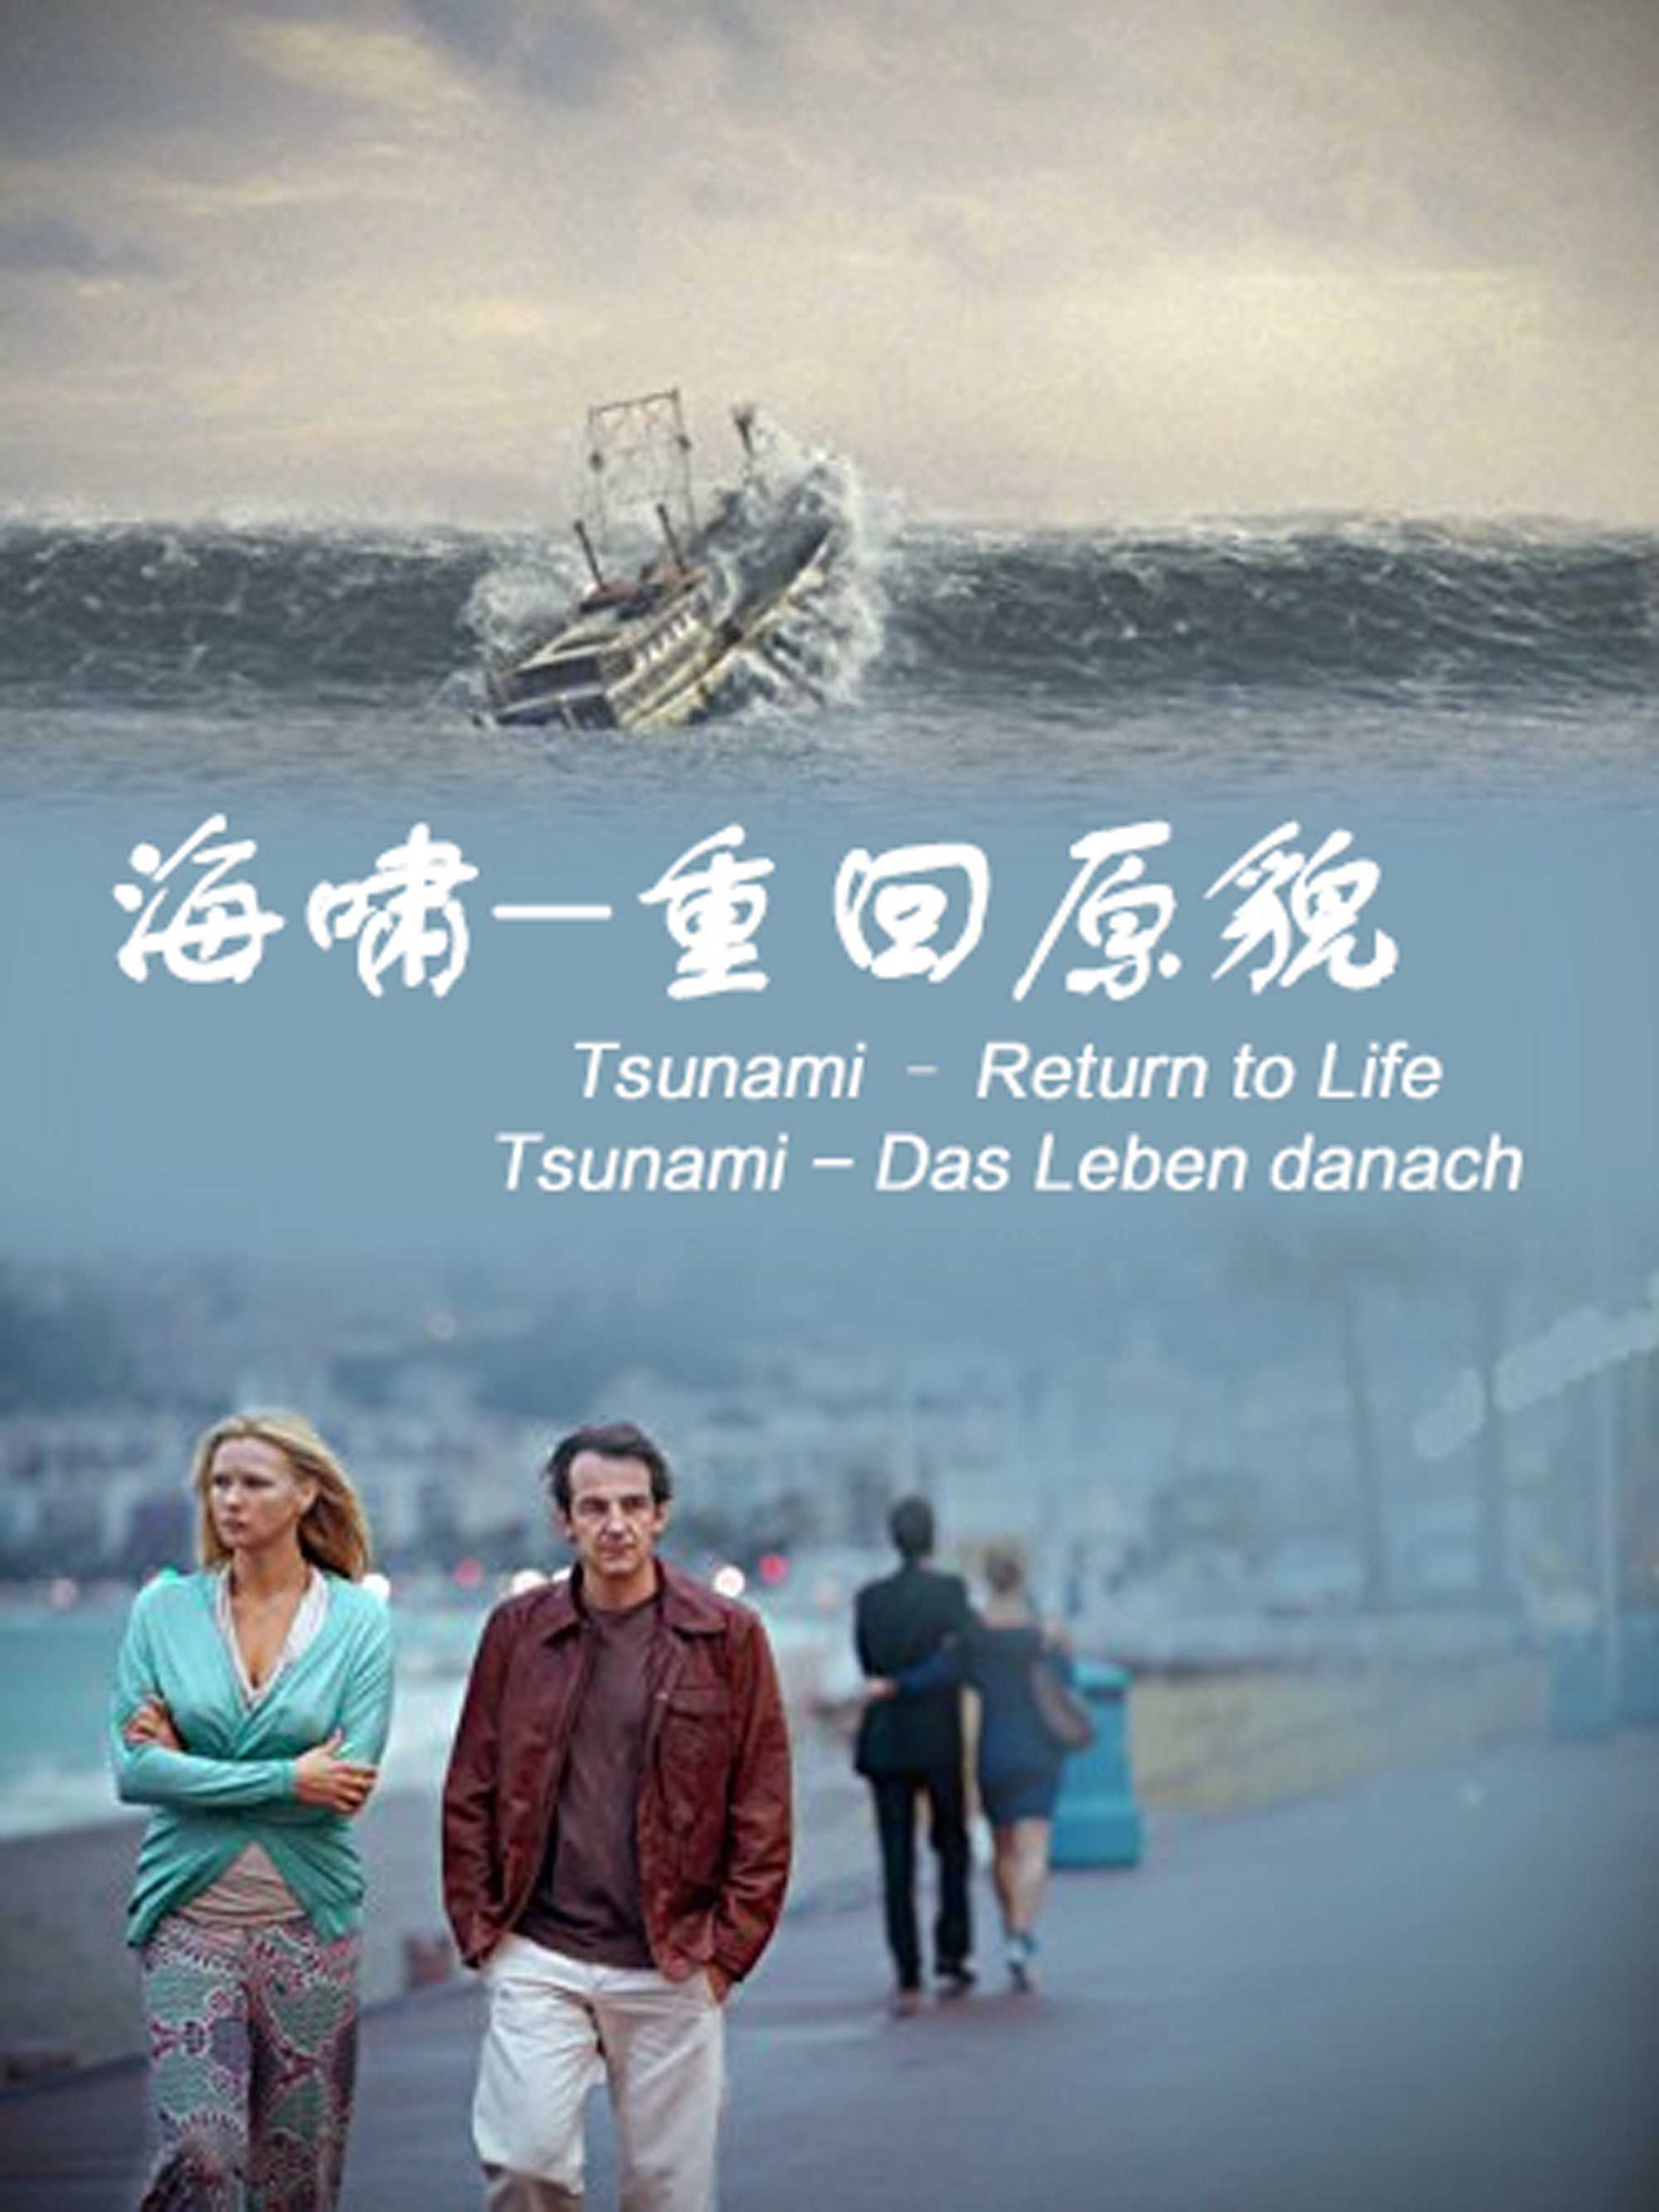 ‘~海啸-重回原貌 Tsunami: más allá de la tragedia HD电影完全无删版免费在线观赏_剧情片_  ~’ 的图片